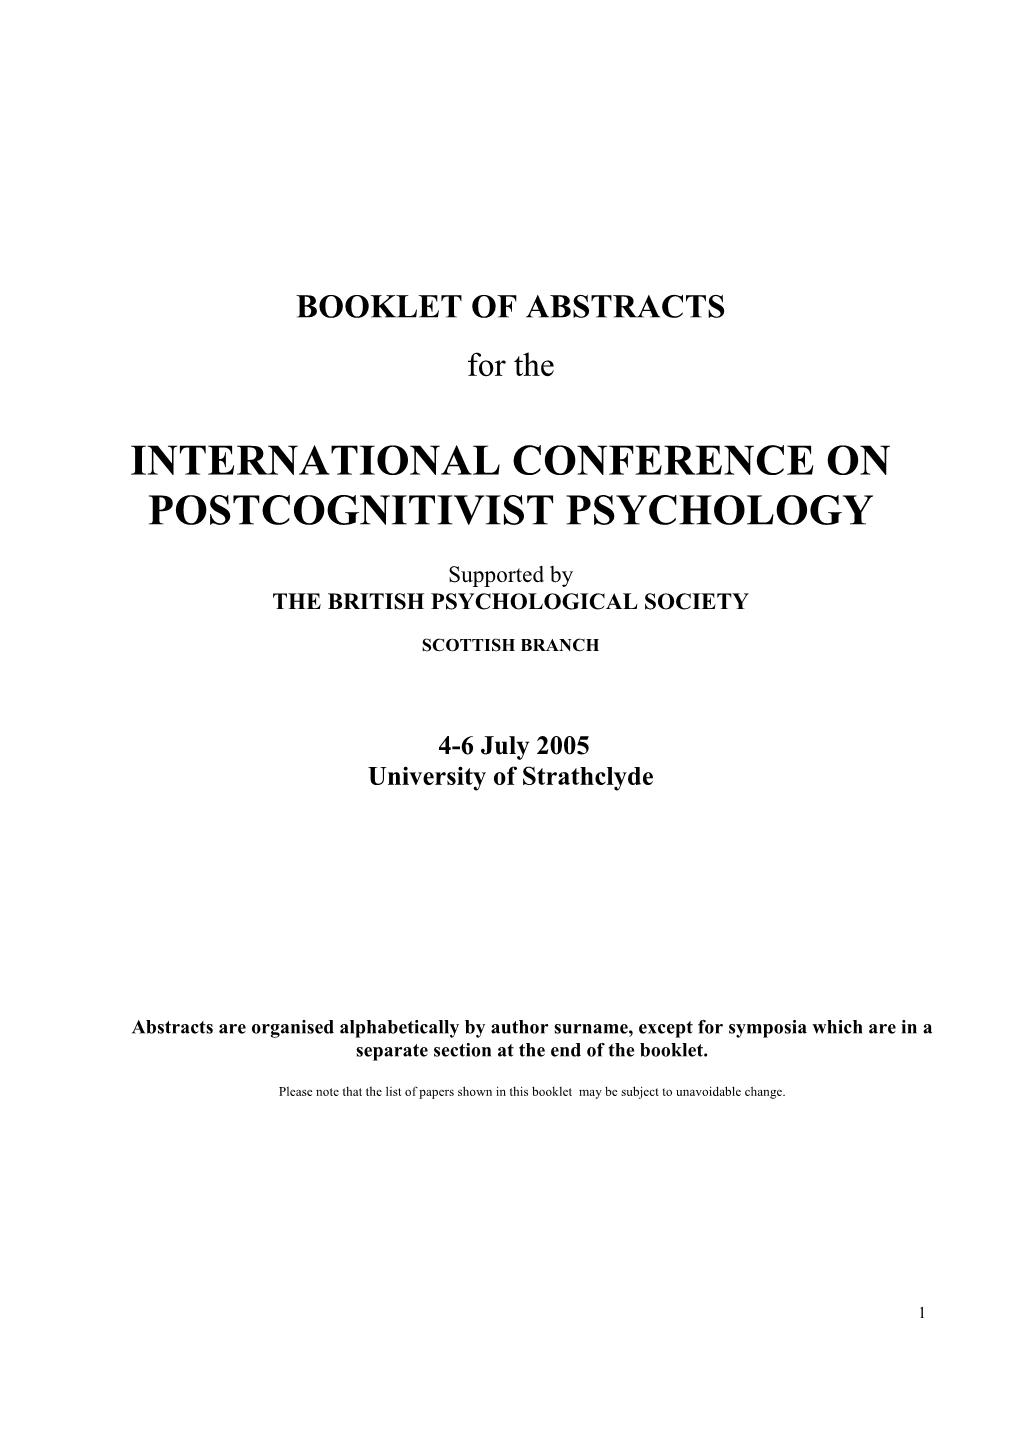 International Conference on Postcognitivist Psychology